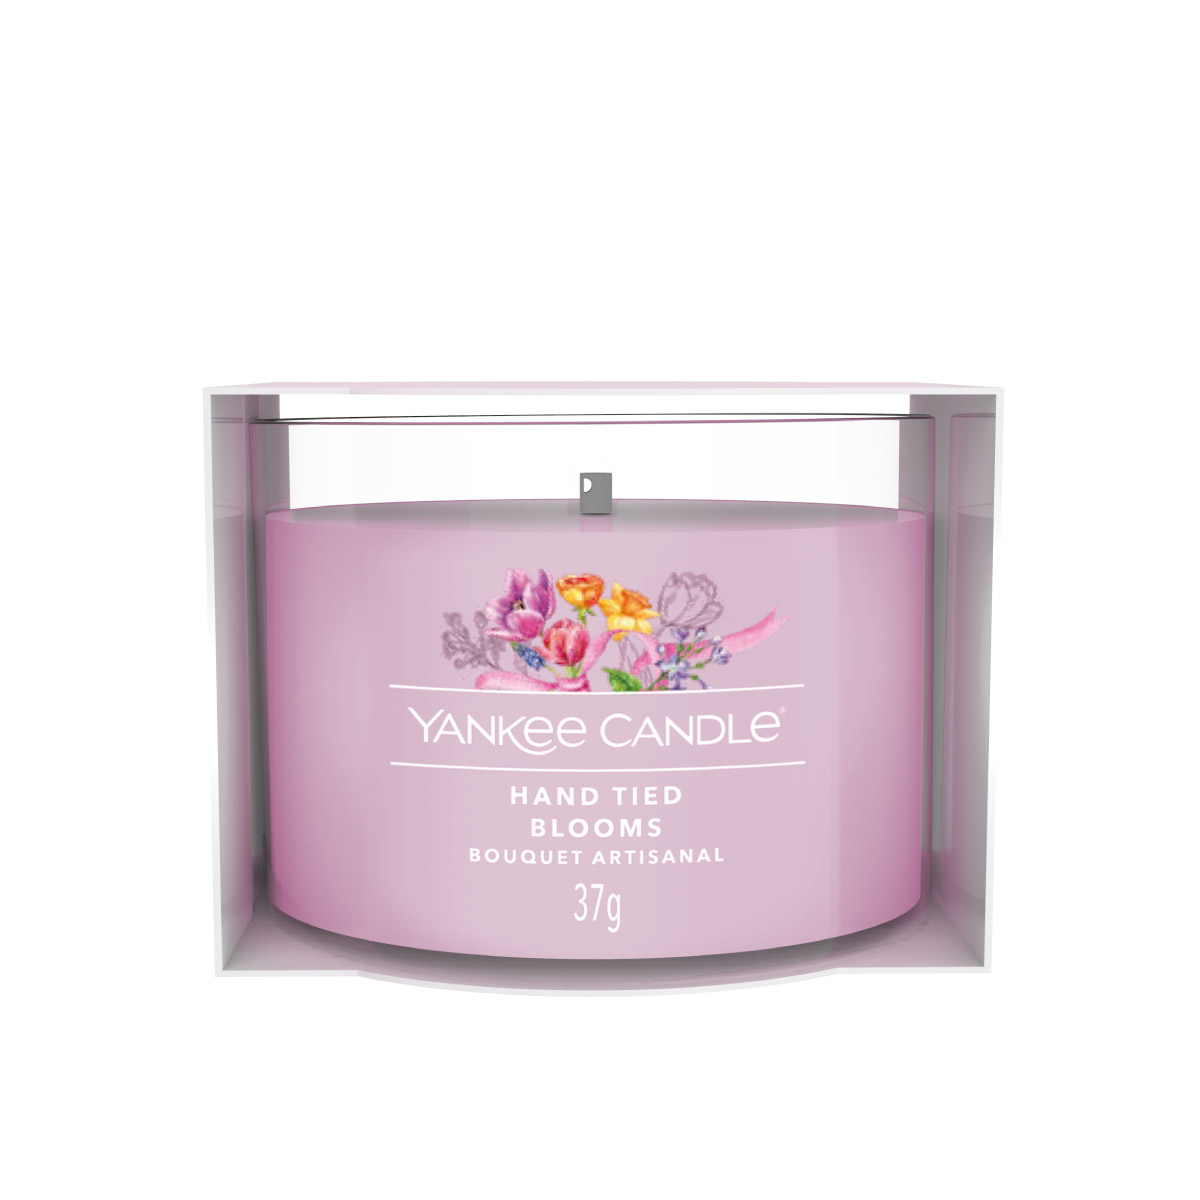 Hand Tied Blooms - gefülltes Votivkerzenglas 37g - Yankee Candle®